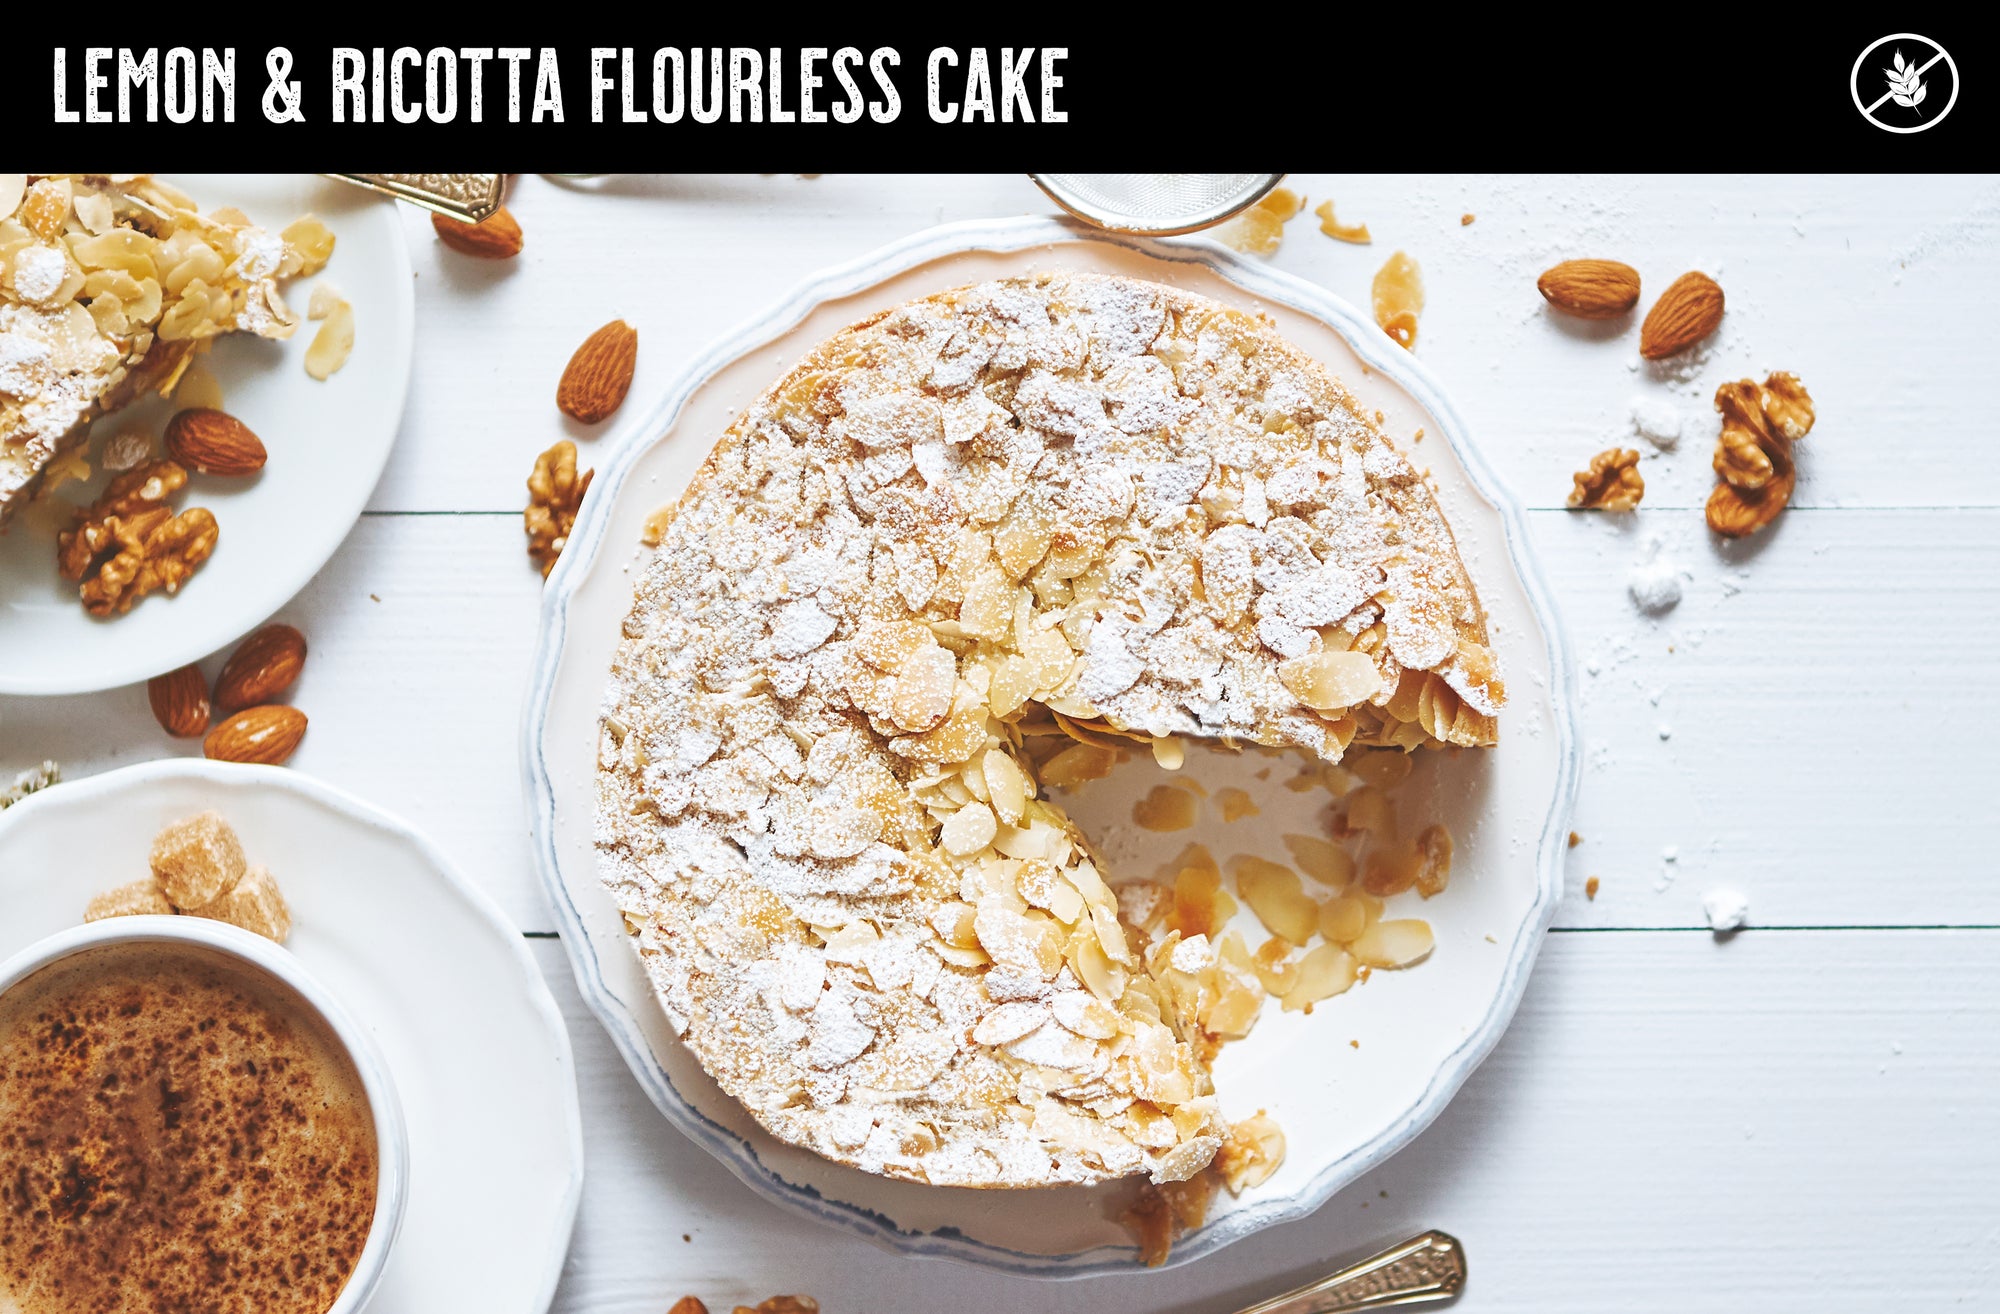 Lemon & Ricotta Flourless Cake